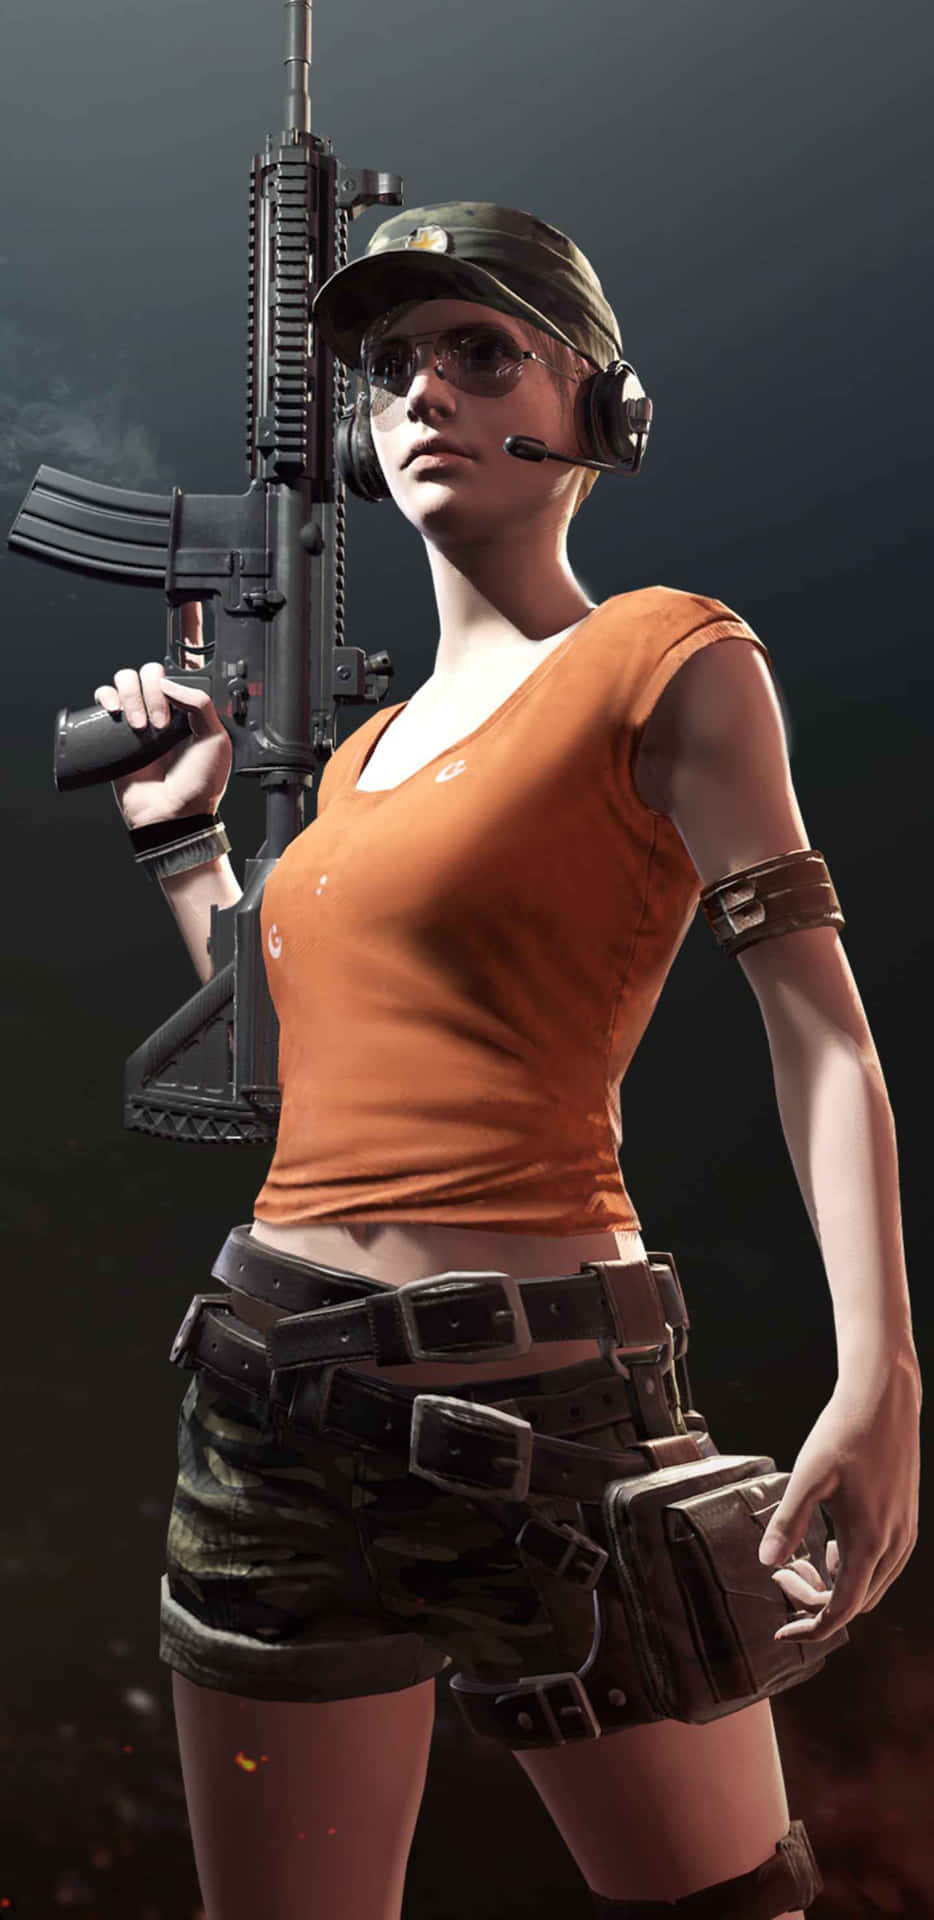 Pixel3xl Playerunknown's Battlegrounds Bakgrund Med Beväpnad Kvinna I Orange Skjorta.